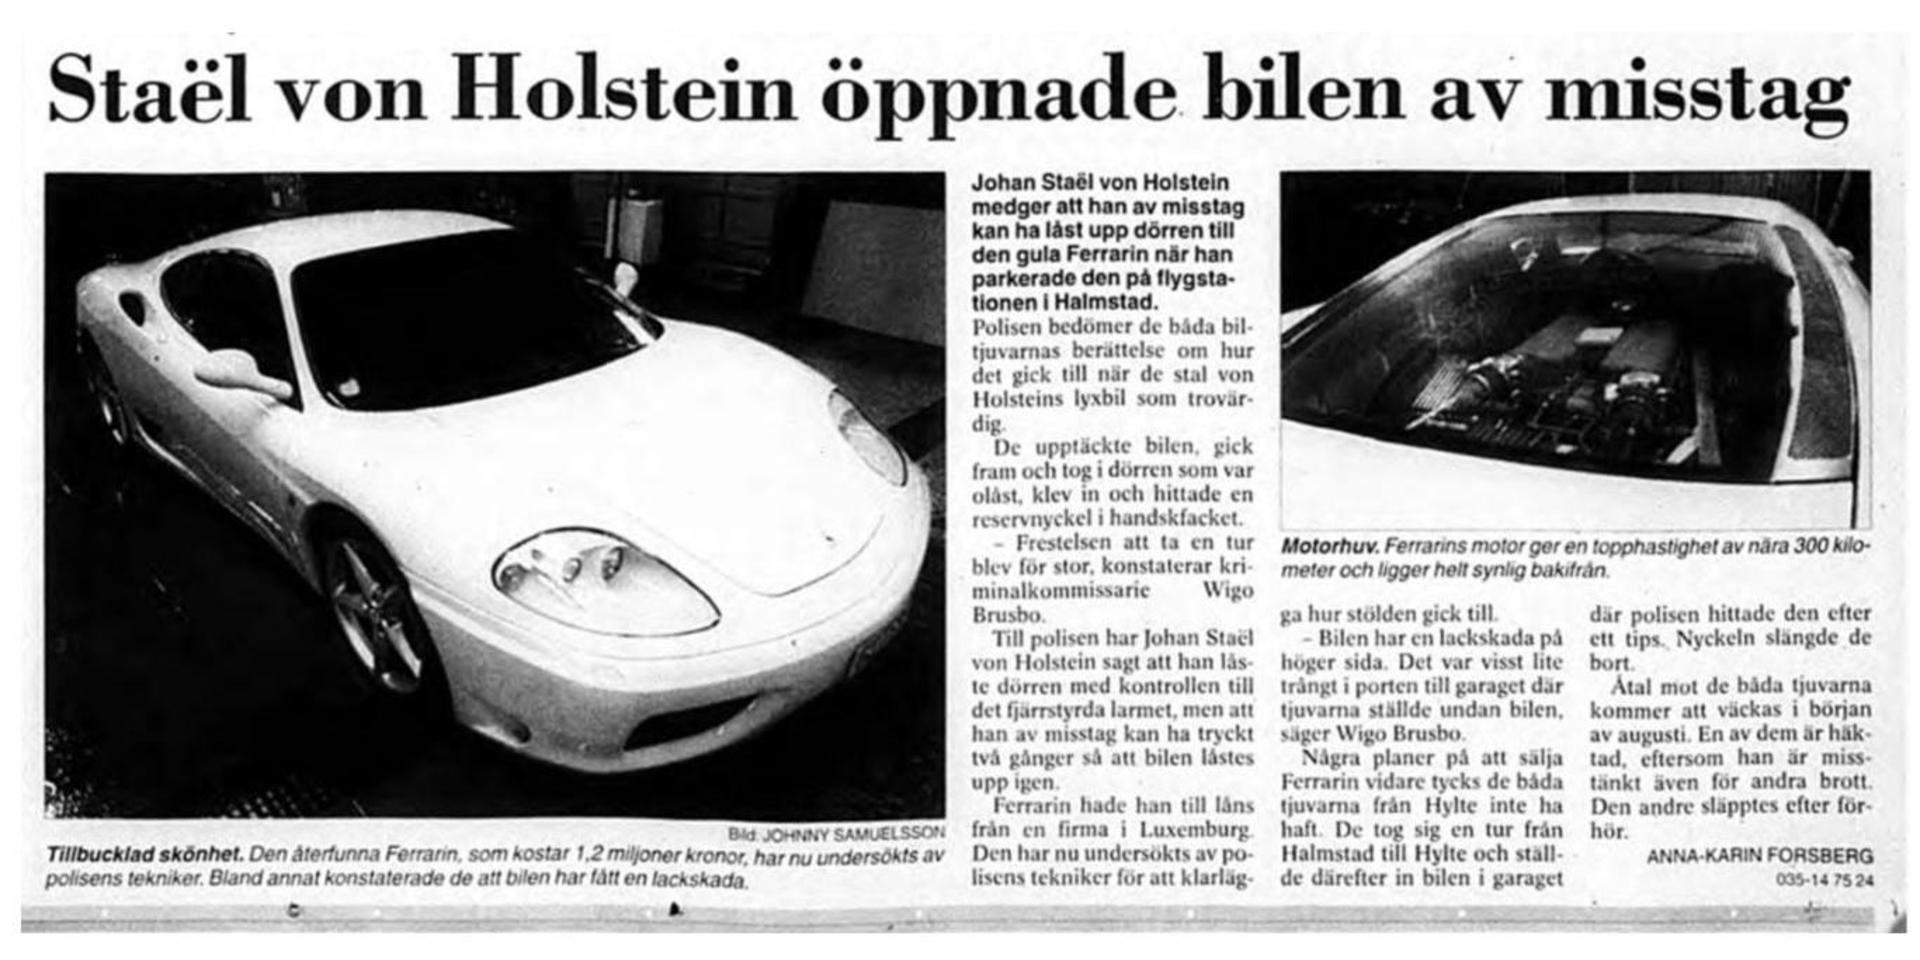 Artikel i Hallandsposten från juli 2000.